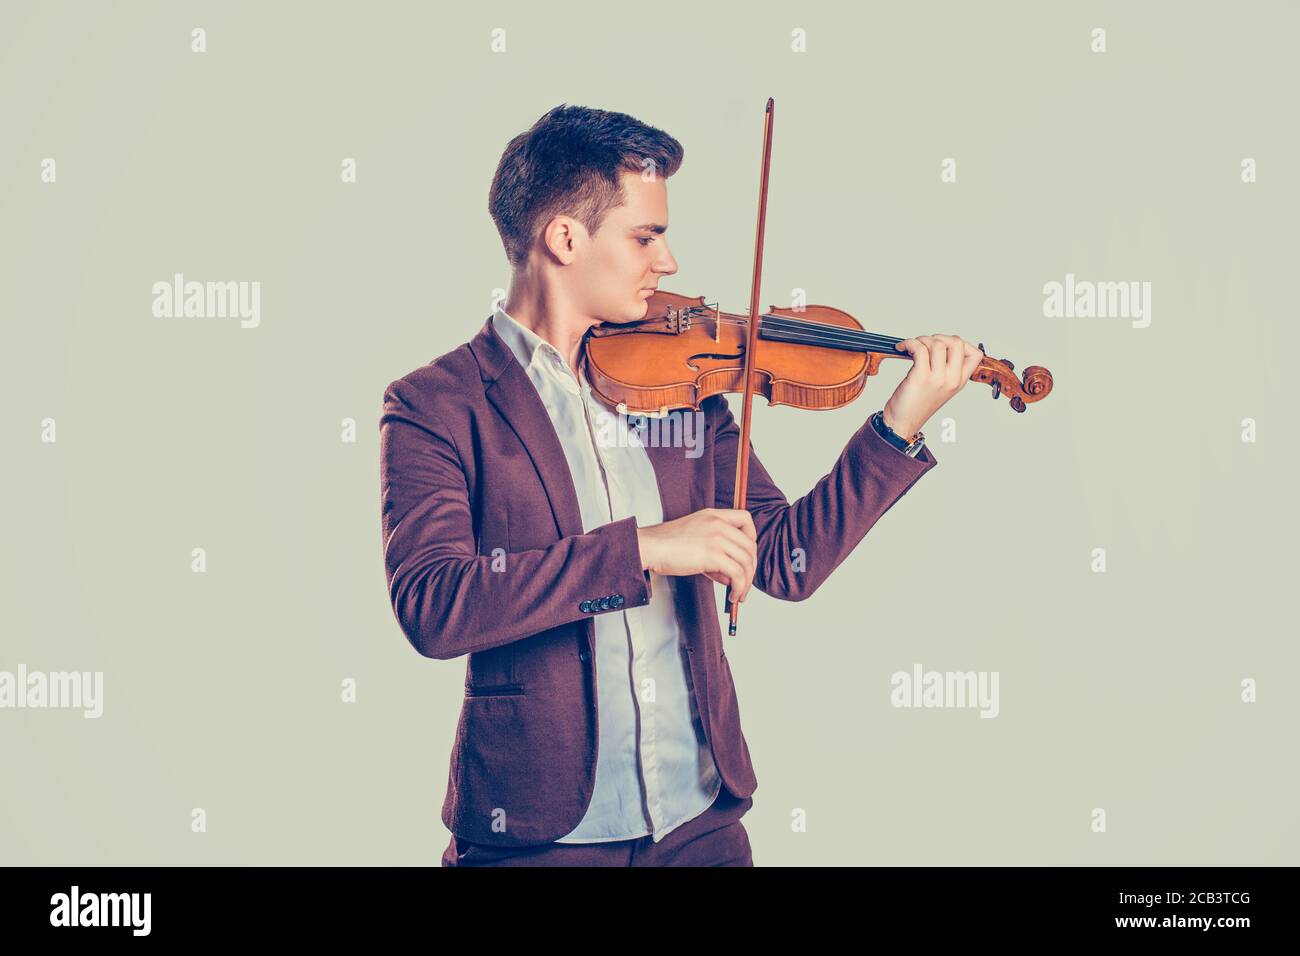 Passion de la musique, concept de passe-temps. Jeune homme habillé moderne et jouant avec élégance sur du violon en bois dans un studio isolé sur un fond de mur vert clair. H Banque D'Images